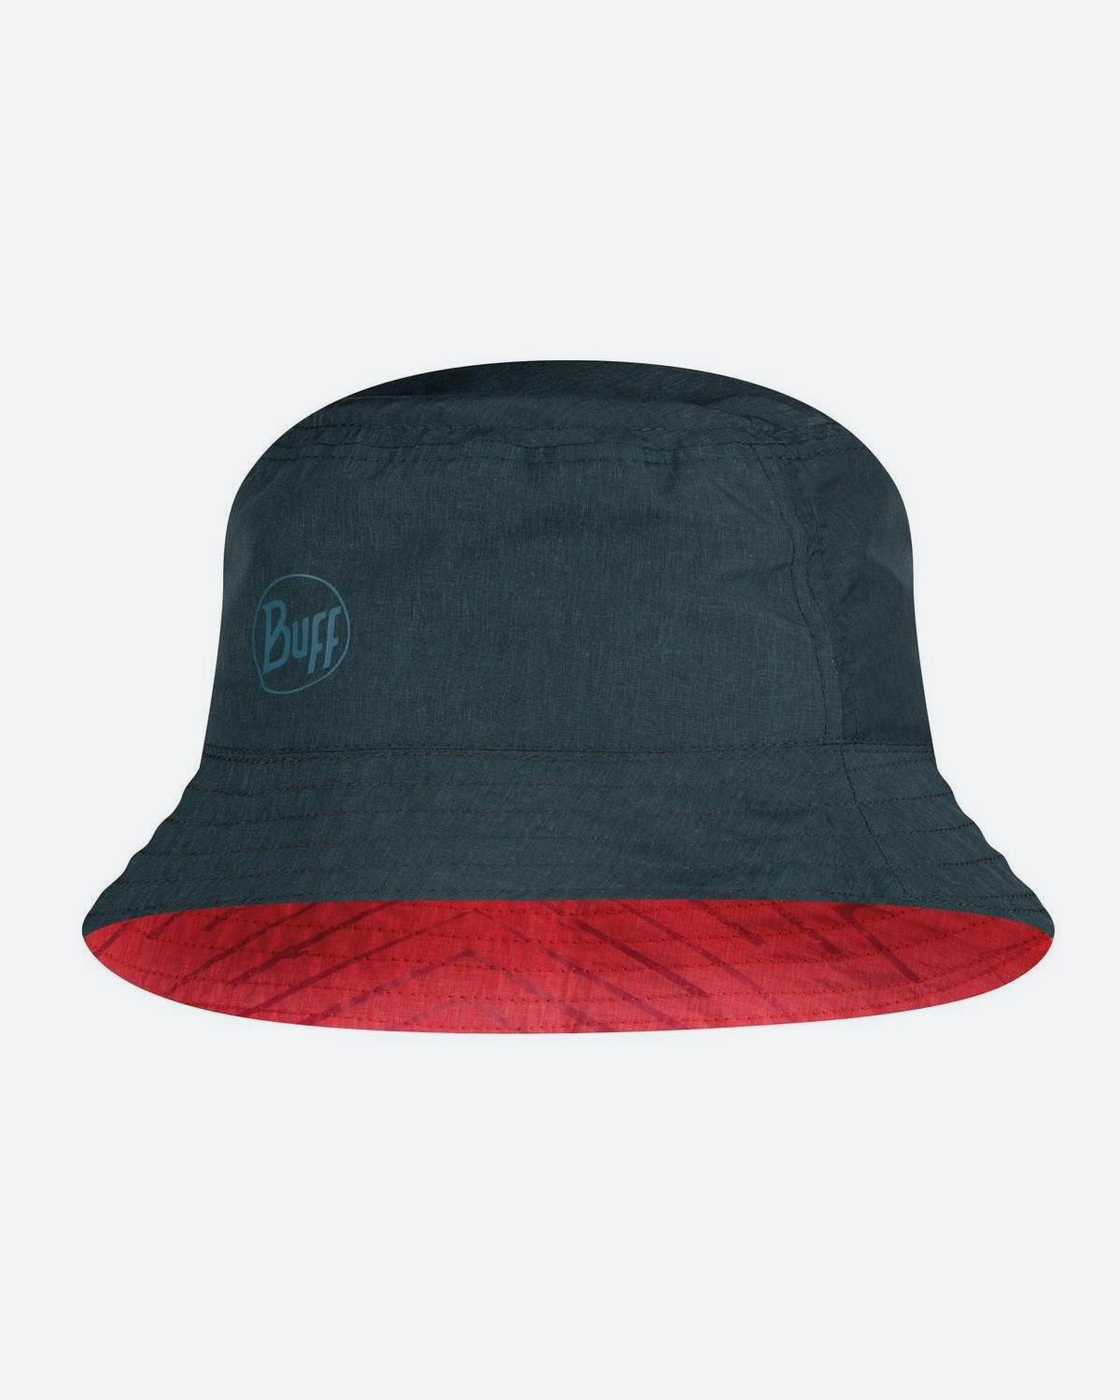 Панама Buff Travel Bucket Hat - купить в интернет-магазине OZON с быстрой д...